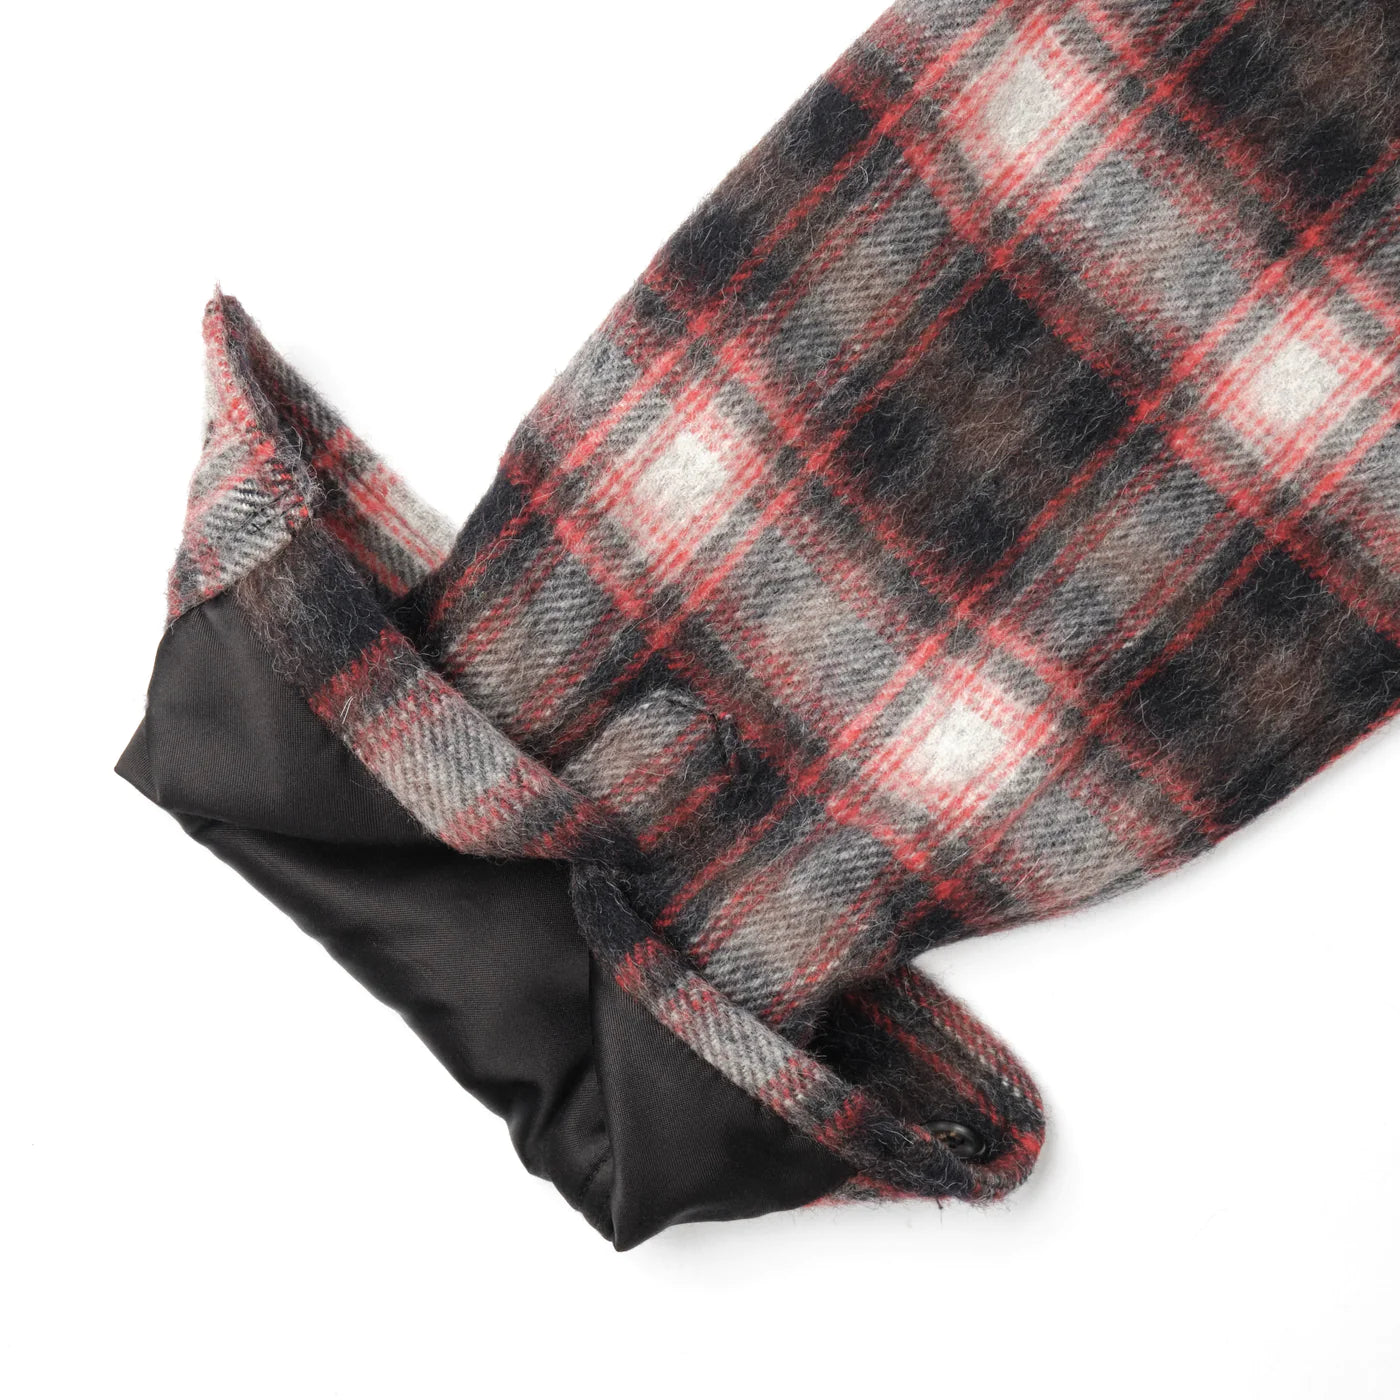 Freenote Cloth Alta - Black Plaid Wool